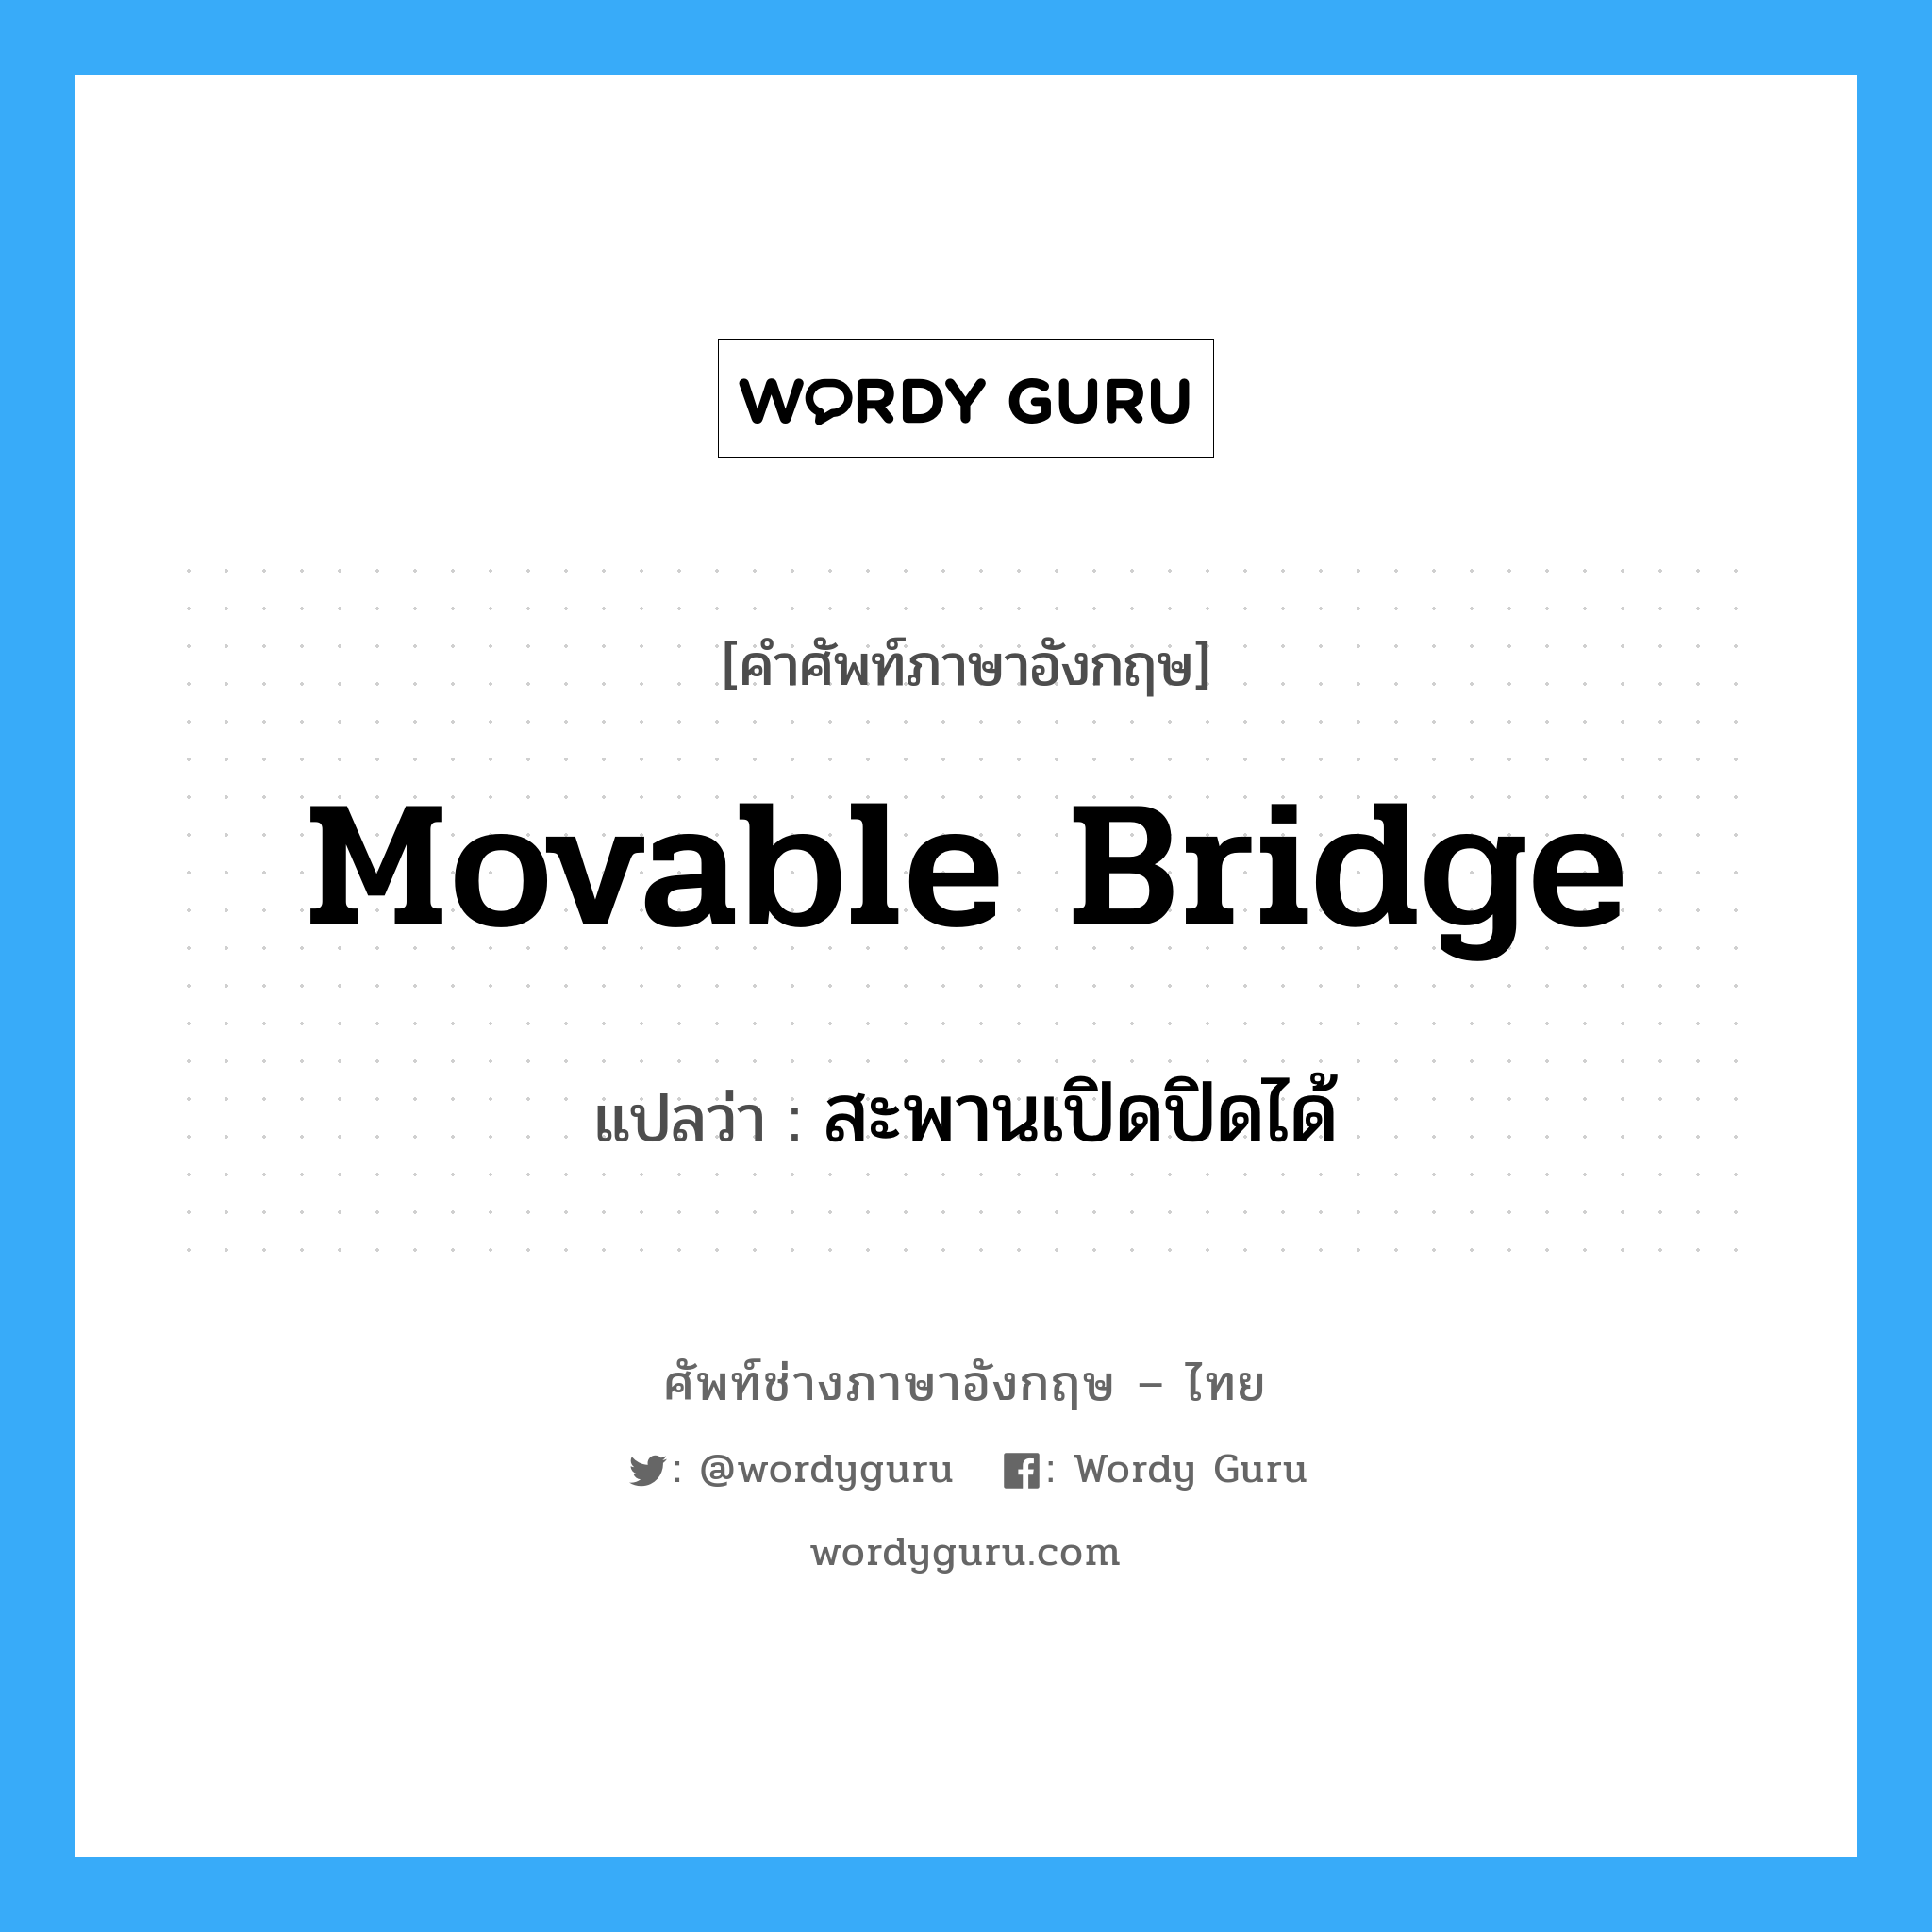 สะพานเปิดปิดได้ ภาษาอังกฤษ?, คำศัพท์ช่างภาษาอังกฤษ - ไทย สะพานเปิดปิดได้ คำศัพท์ภาษาอังกฤษ สะพานเปิดปิดได้ แปลว่า movable bridge